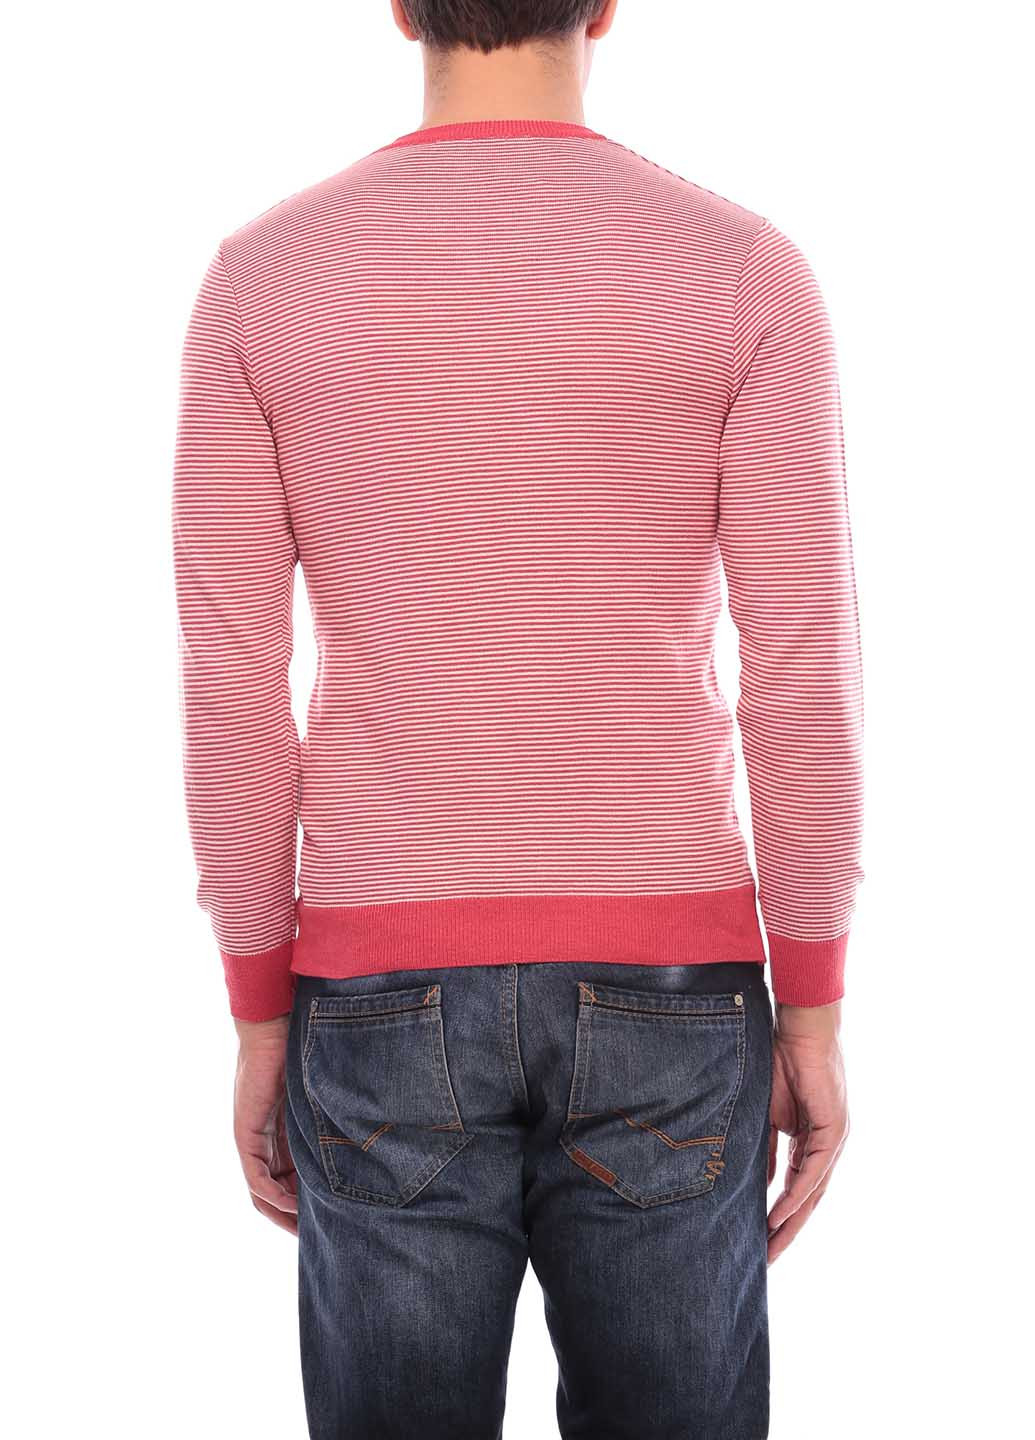 Коралловый демисезонный пуловер пуловер Flash